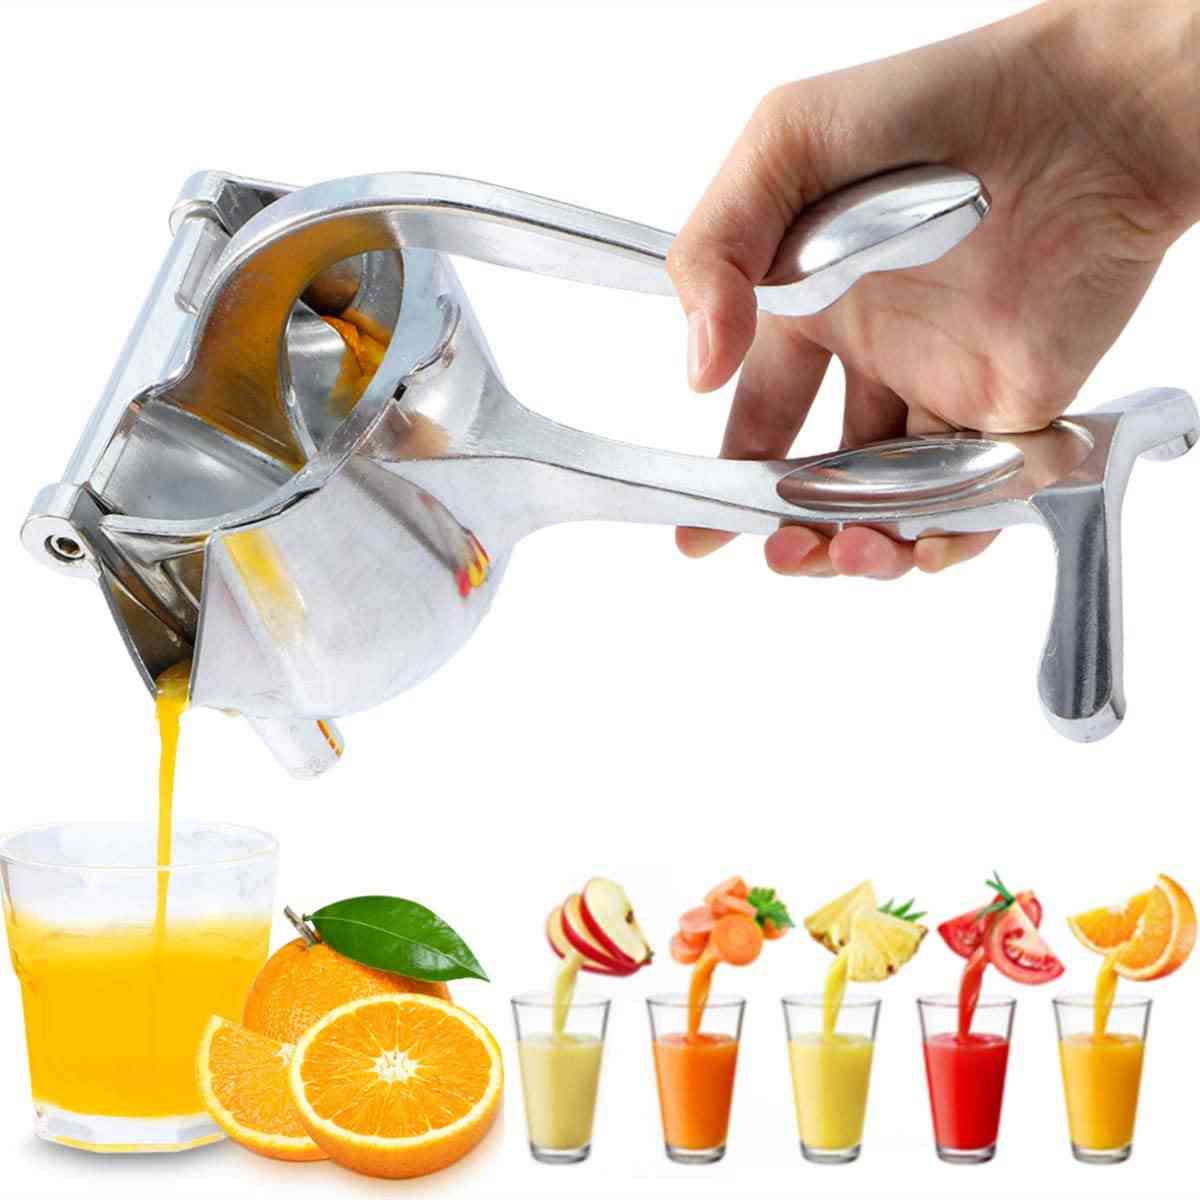 Hand Juicer Kichen Accessories Lemon Squeezer Juice Maker